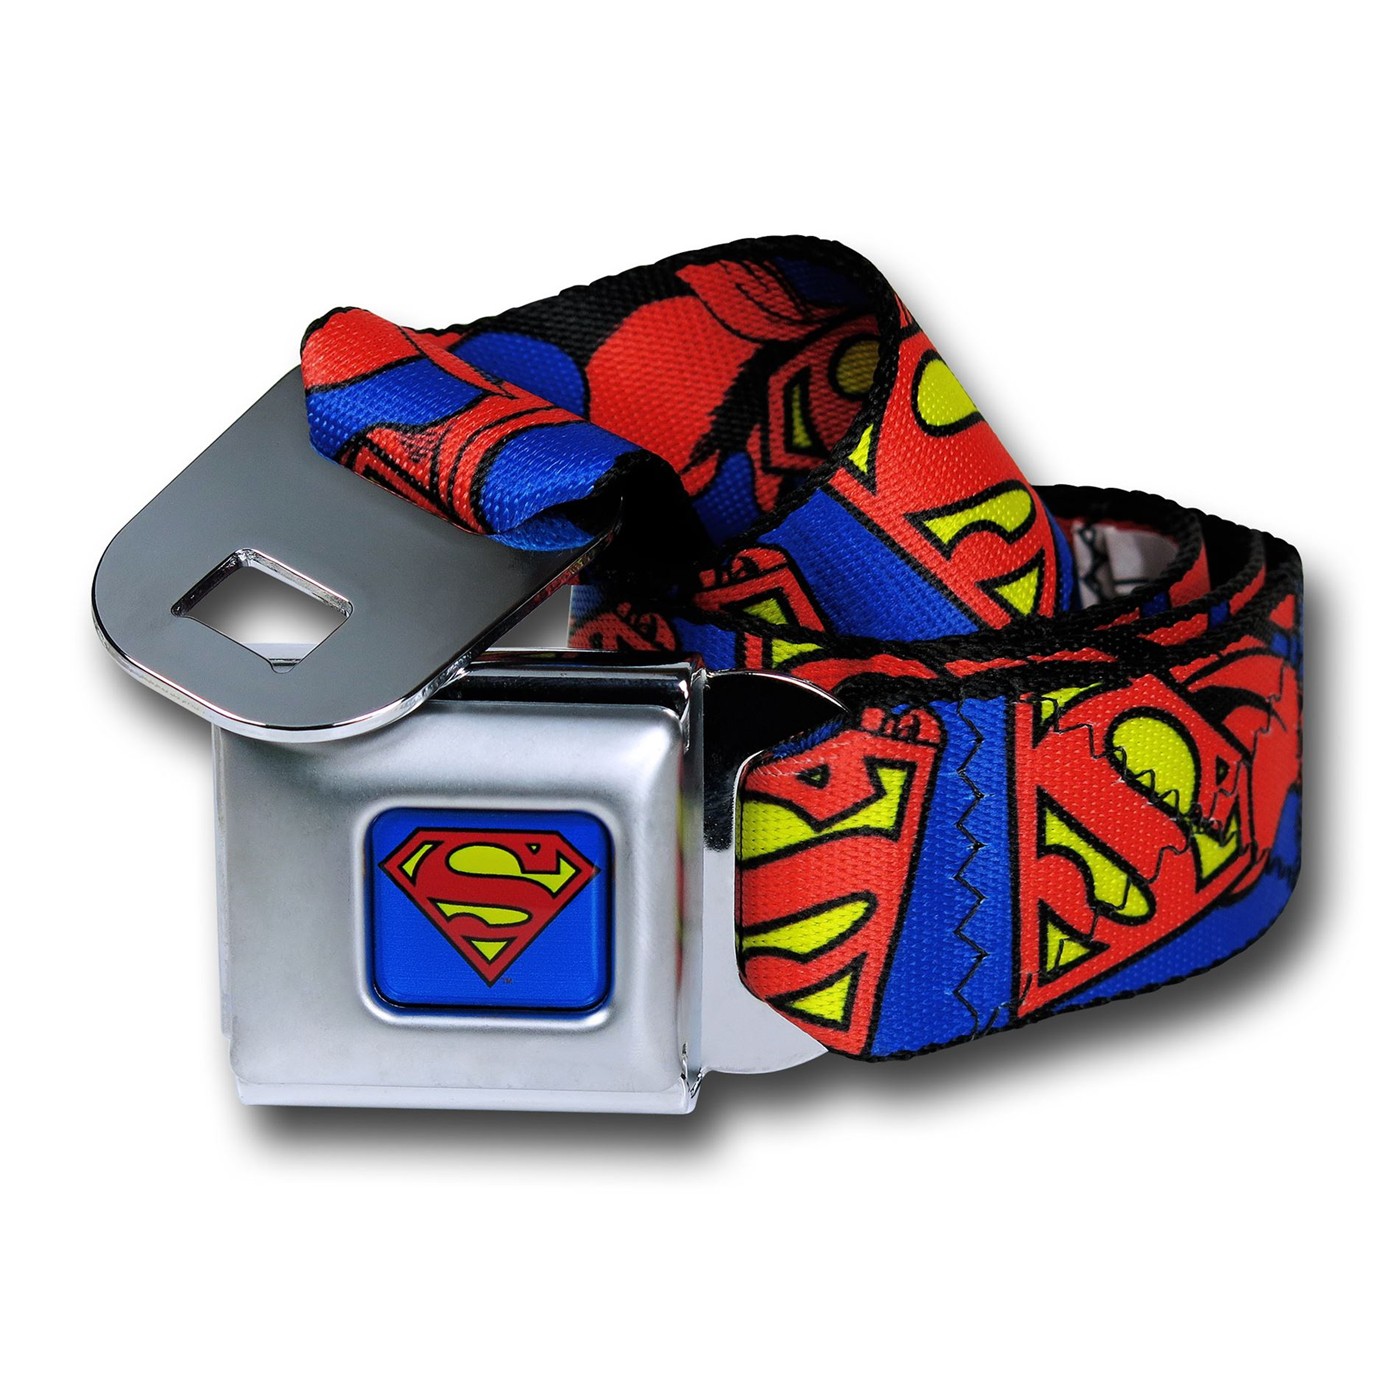 Superman Symbols and Capes Seatbelt Belt